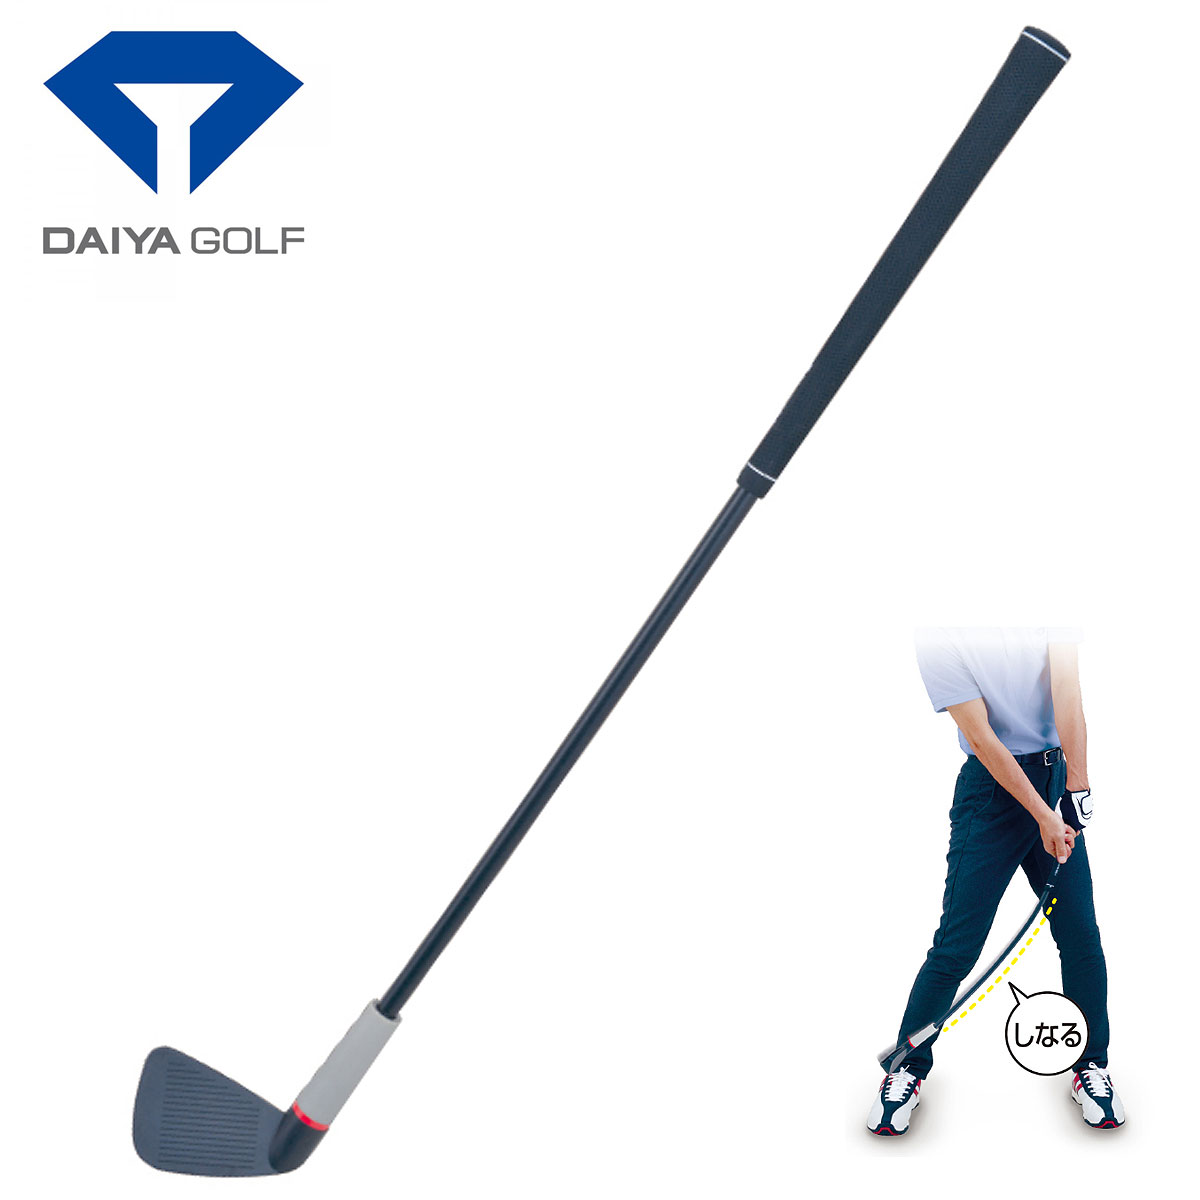 しなりで覚えるスイングリズム DAIYA GOLF 日本産 ダイヤゴルフ タイムセール 日本正規品 ダイヤスイング533 スイング練習器 TR-533 ゴルフスイング練習用品 あす楽対応